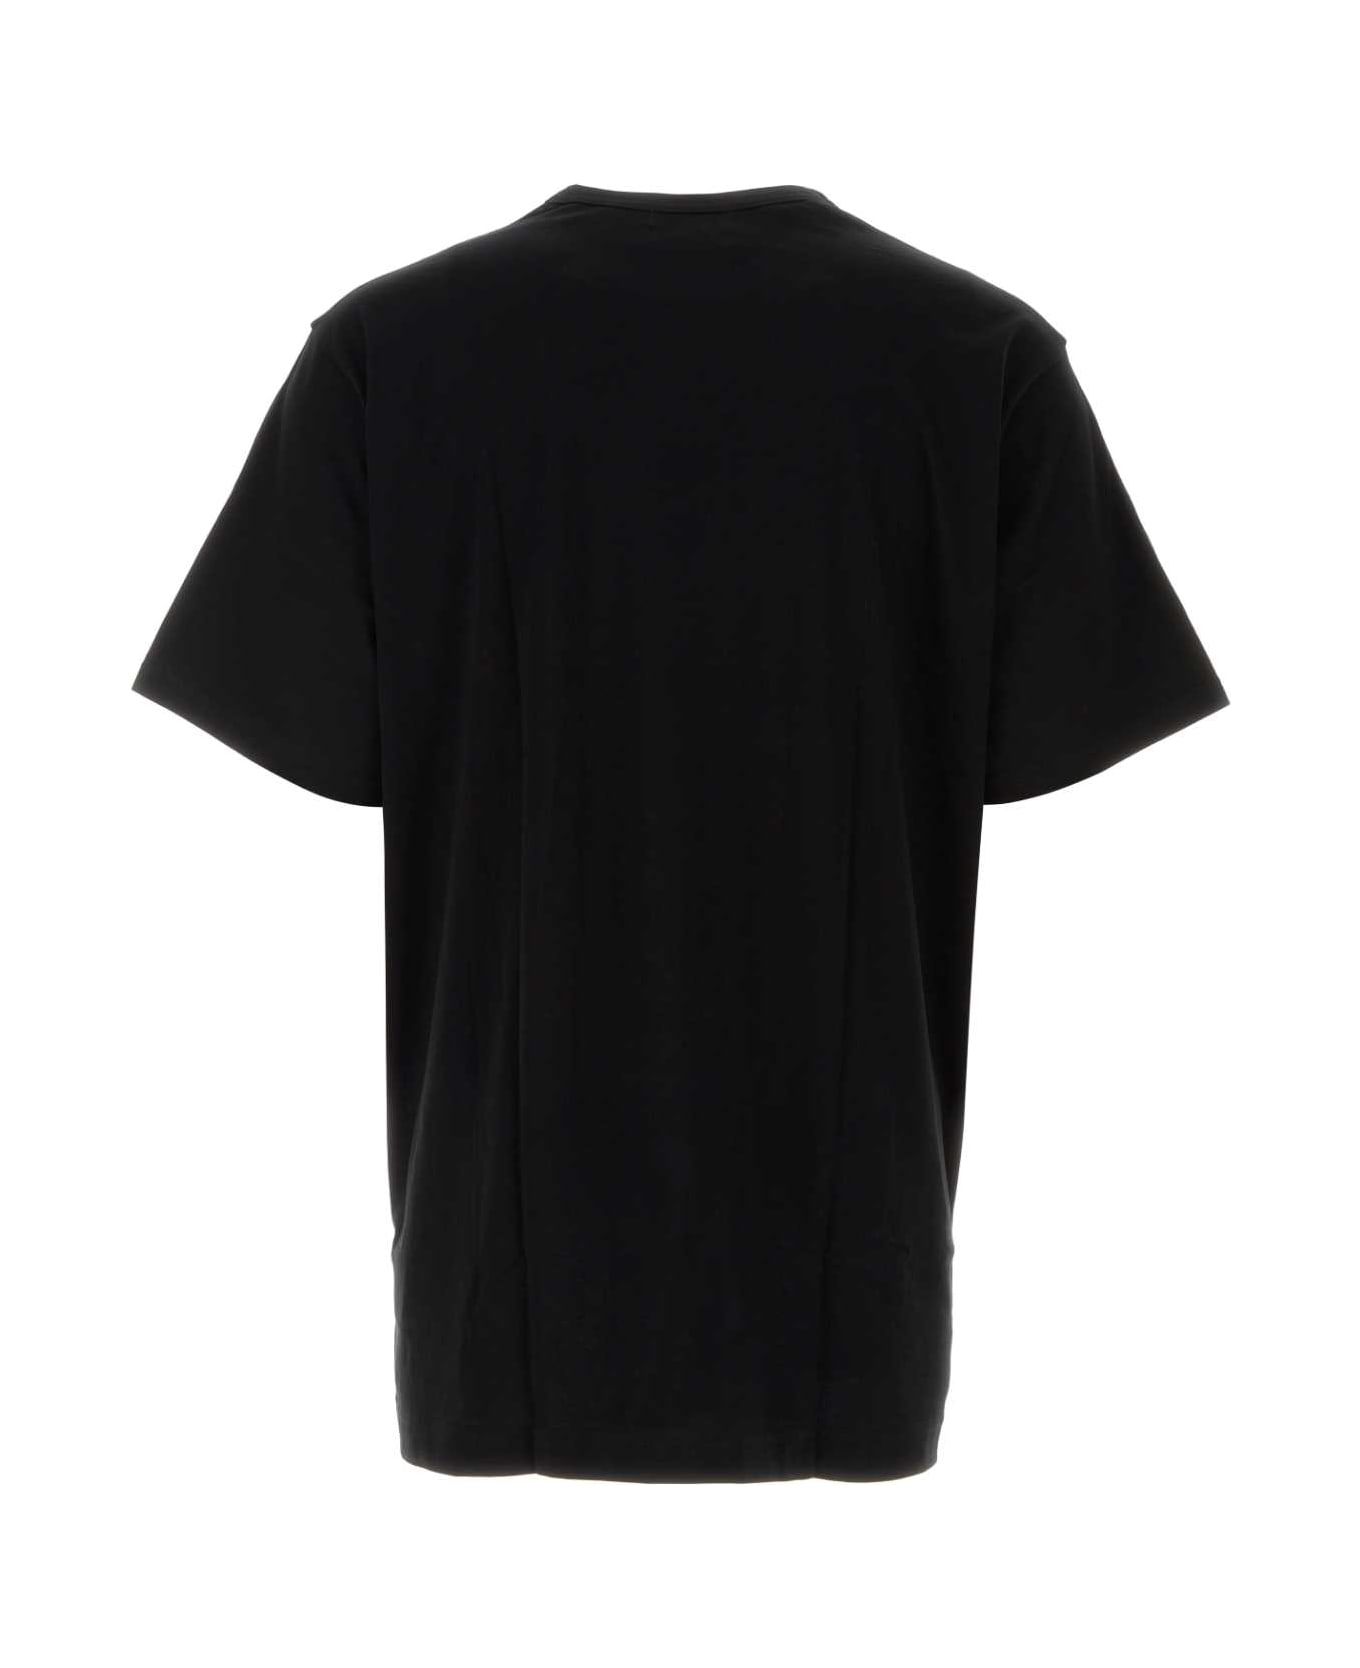 Yohji Yamamoto Black Cotton Oversize T-shirt - BLACK